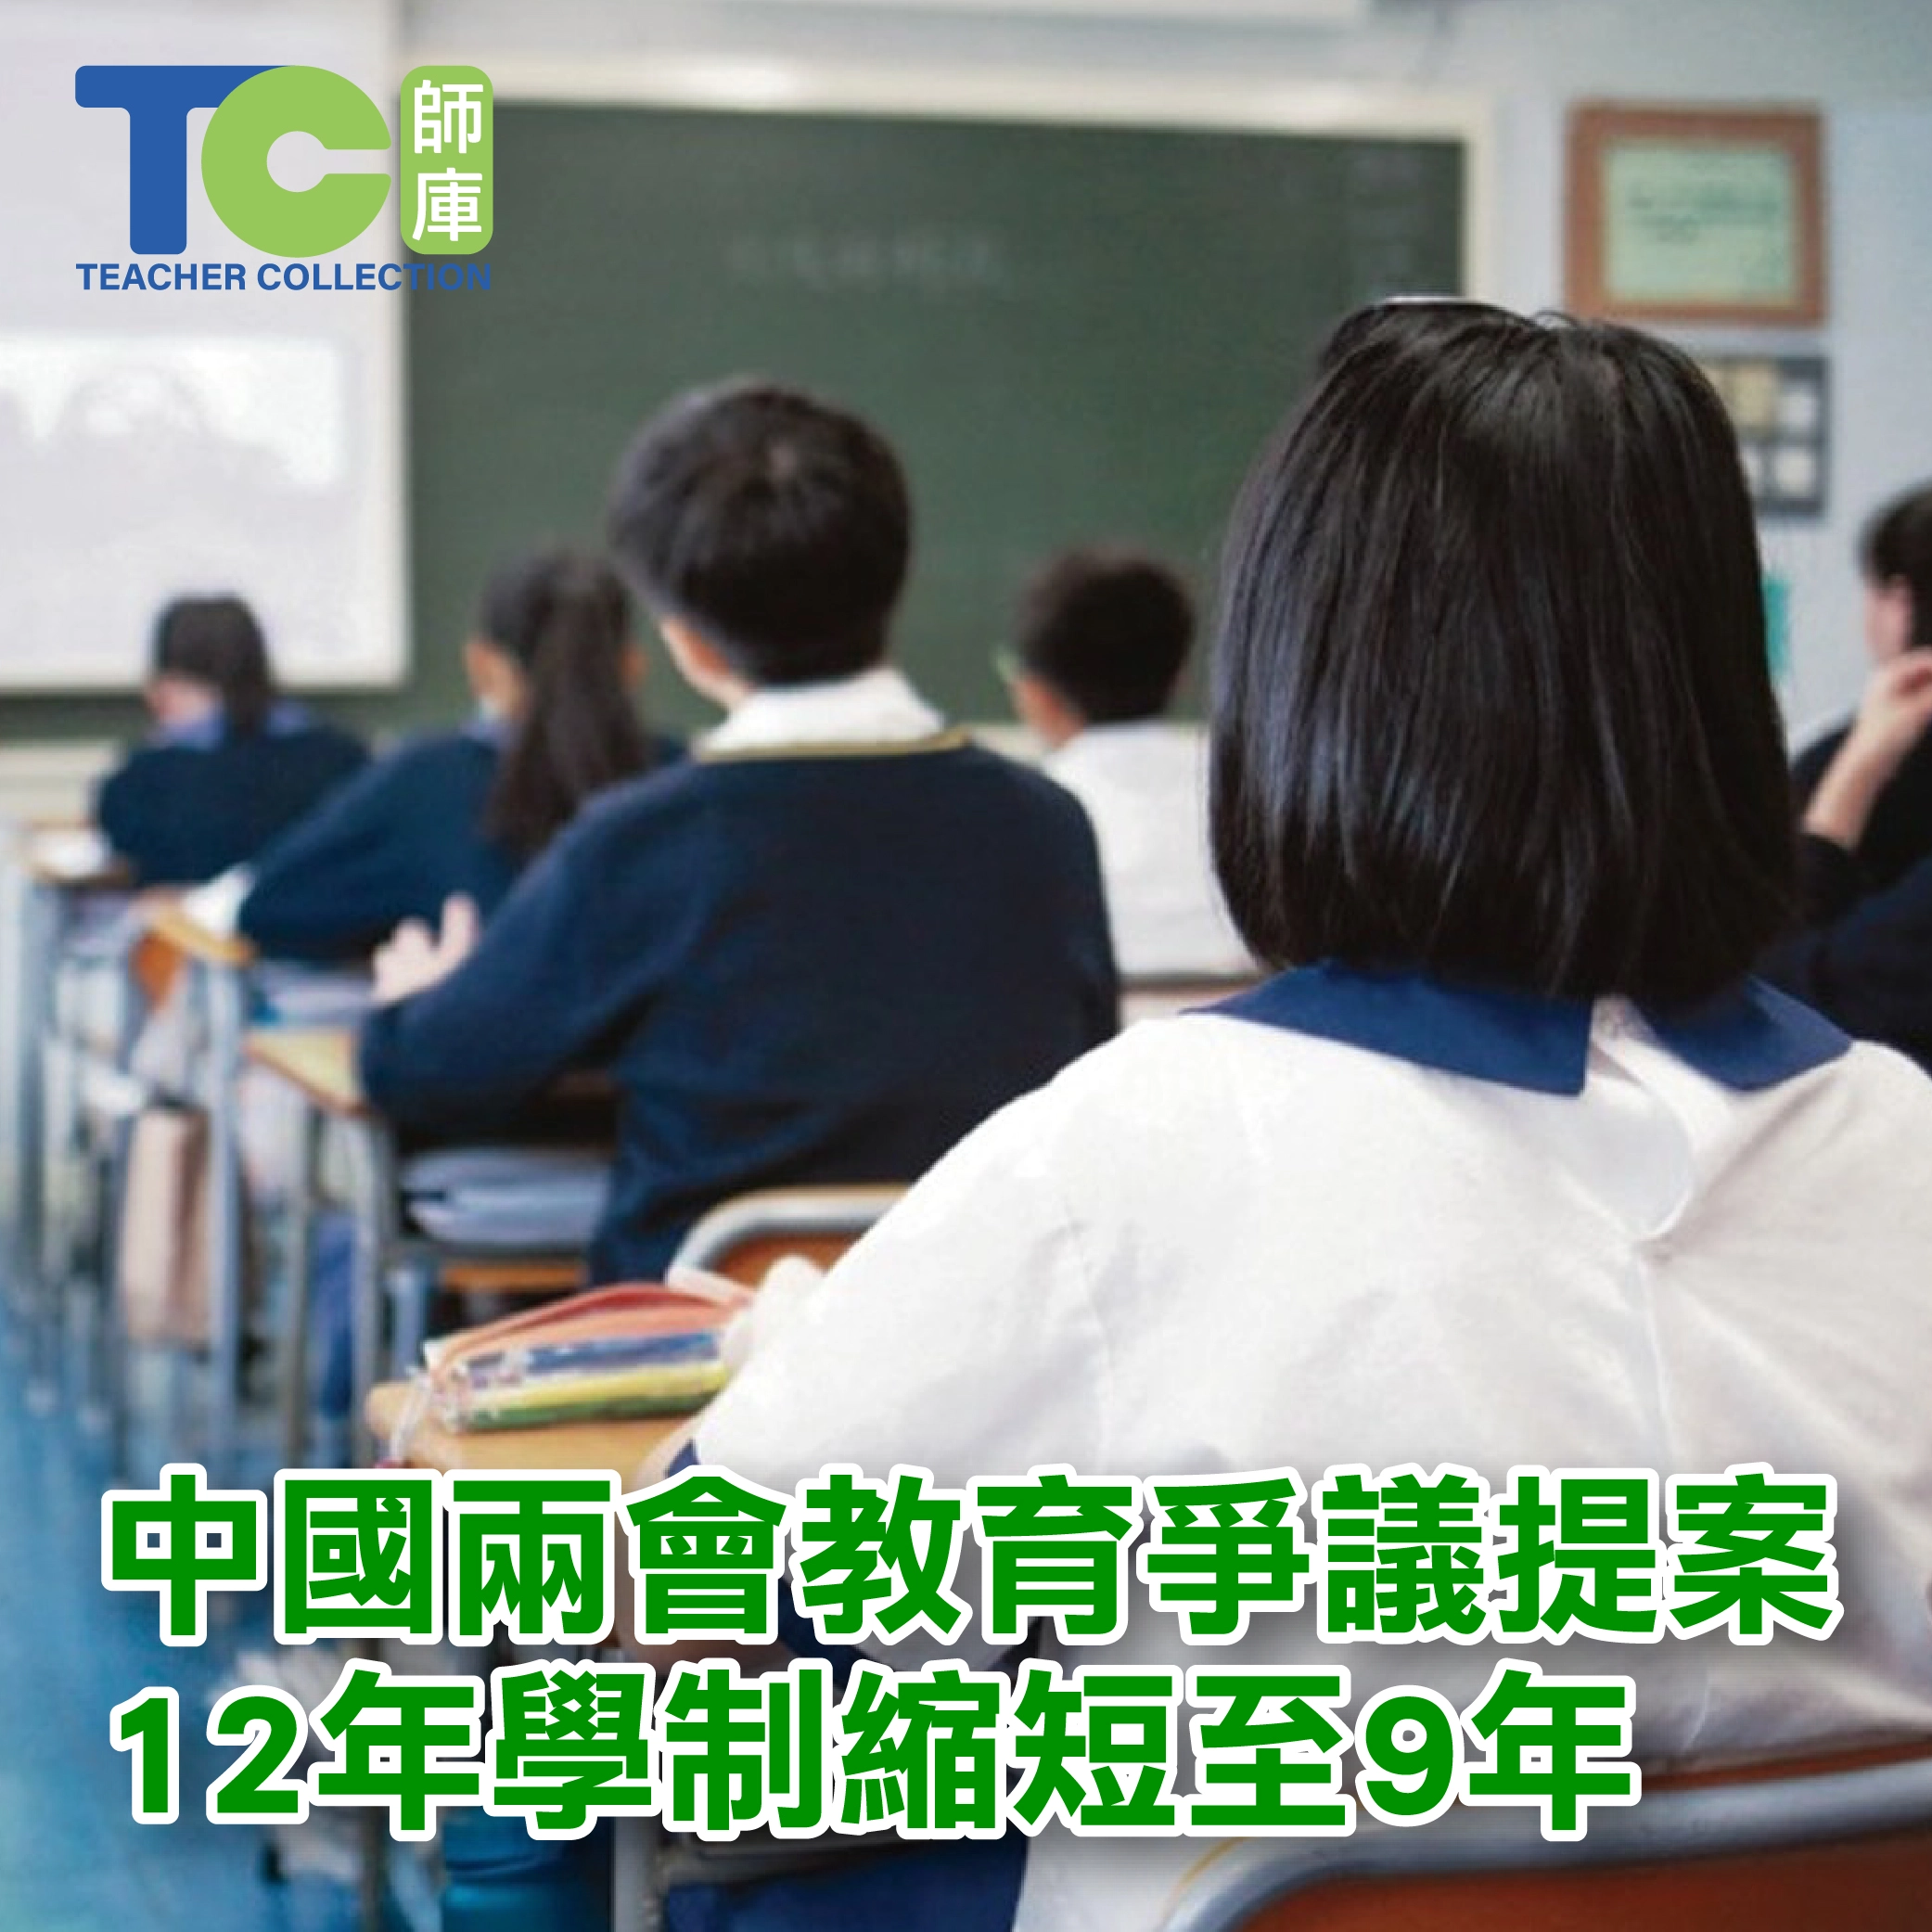 中國兩會教育爭議提案12年學制縮短至9年